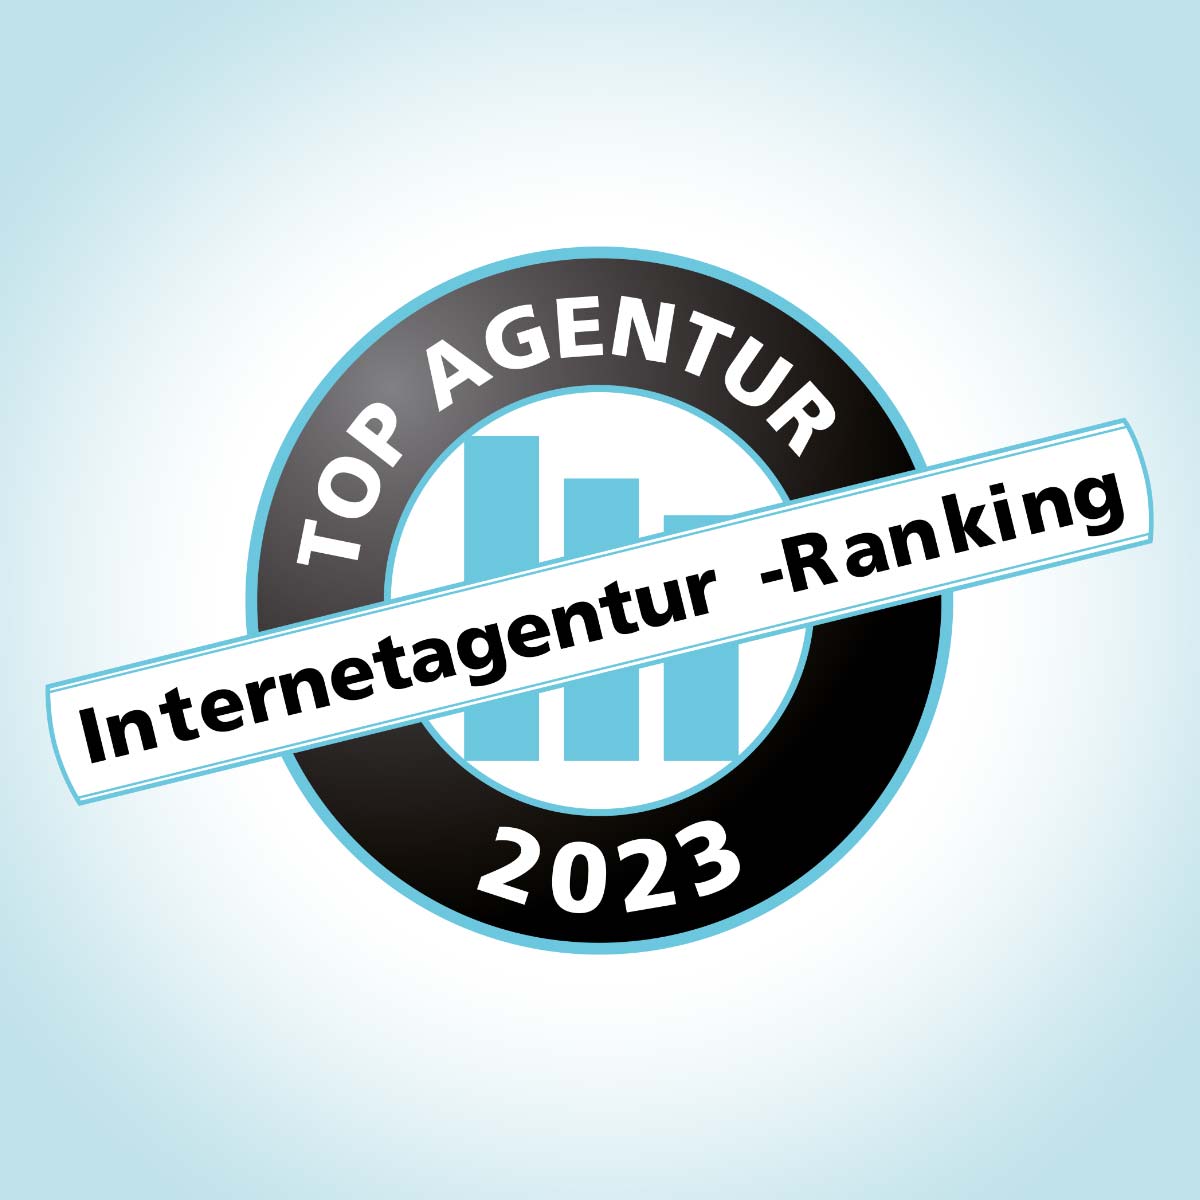  iBusiness Internet-Agenturranking 2023: GROW hat sich Rang 17 gesichert